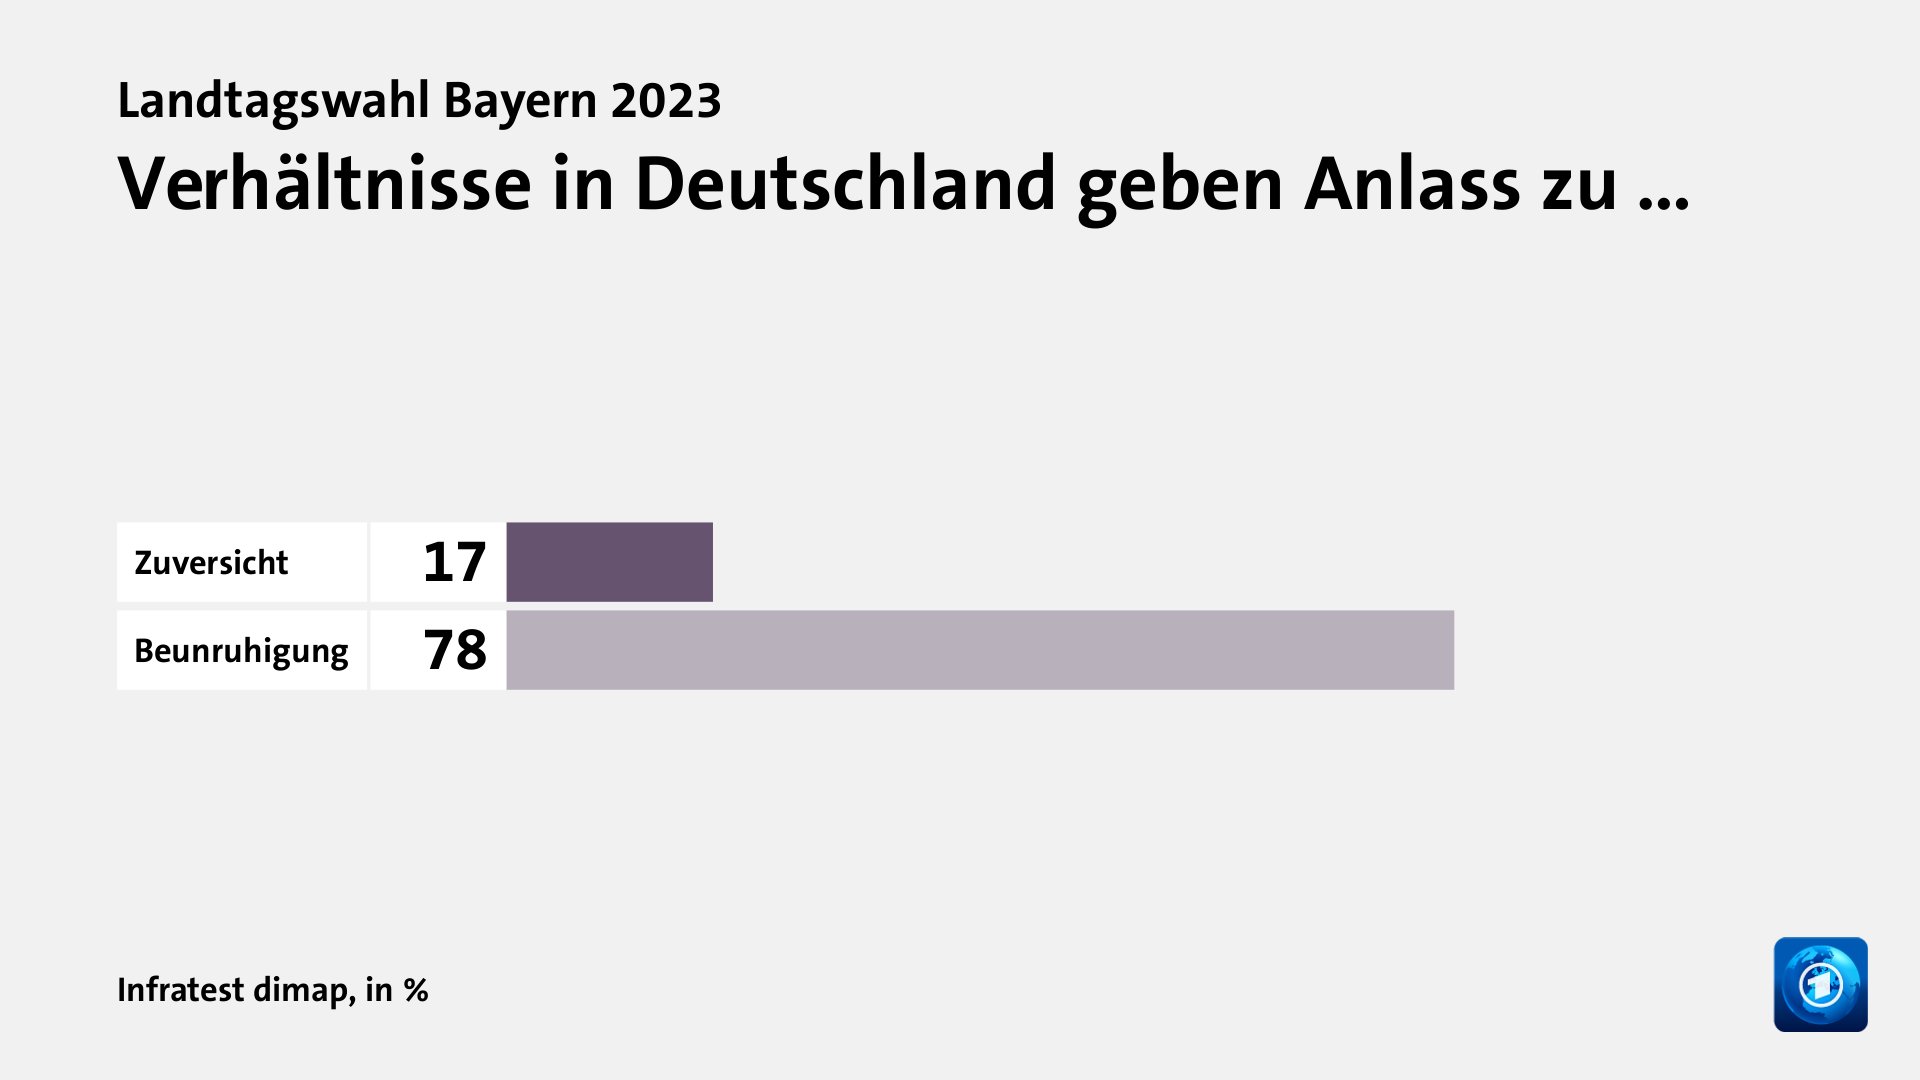 Verhältnisse in Deutschland geben Anlass zu …, in %: Zuversicht 17, Beunruhigung 78, Quelle: Infratest dimap